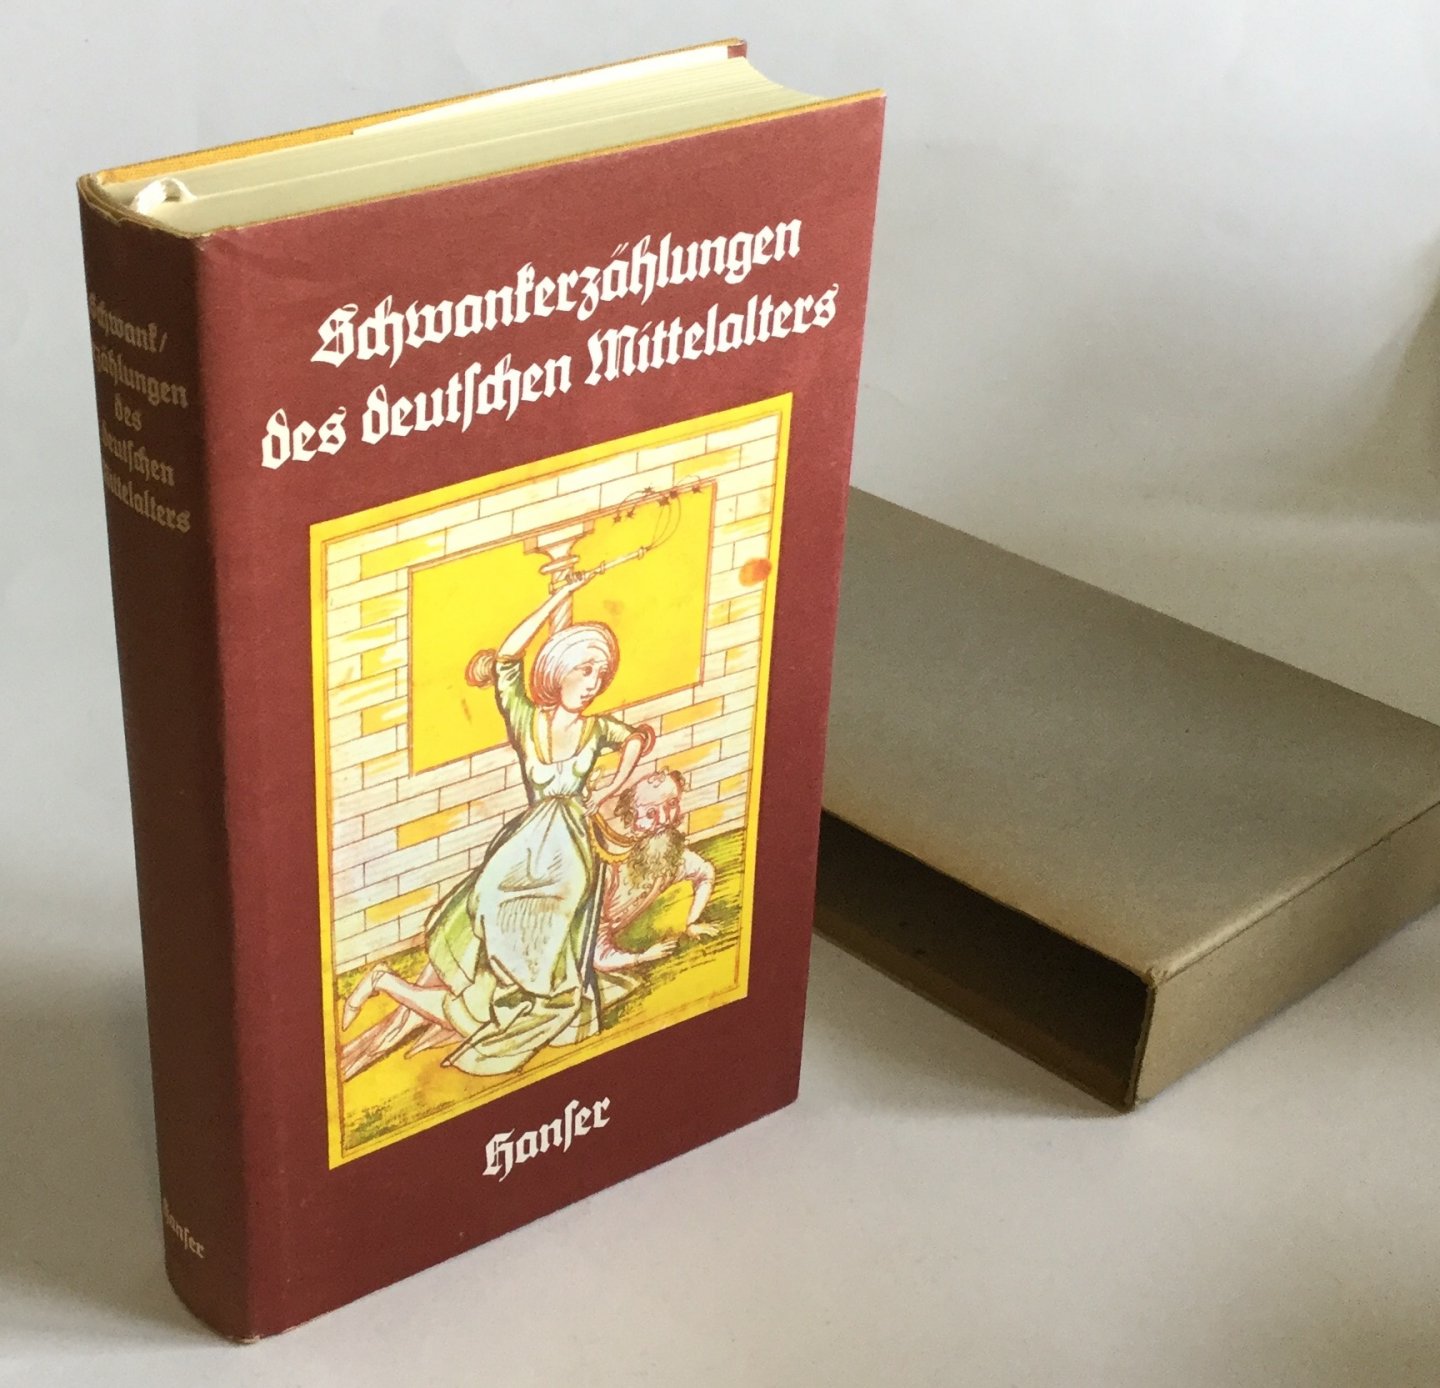 Fischer, Hanns (Ausgewählt und übersetzt) - Schwankerzählungen des deutschen Mittelalters